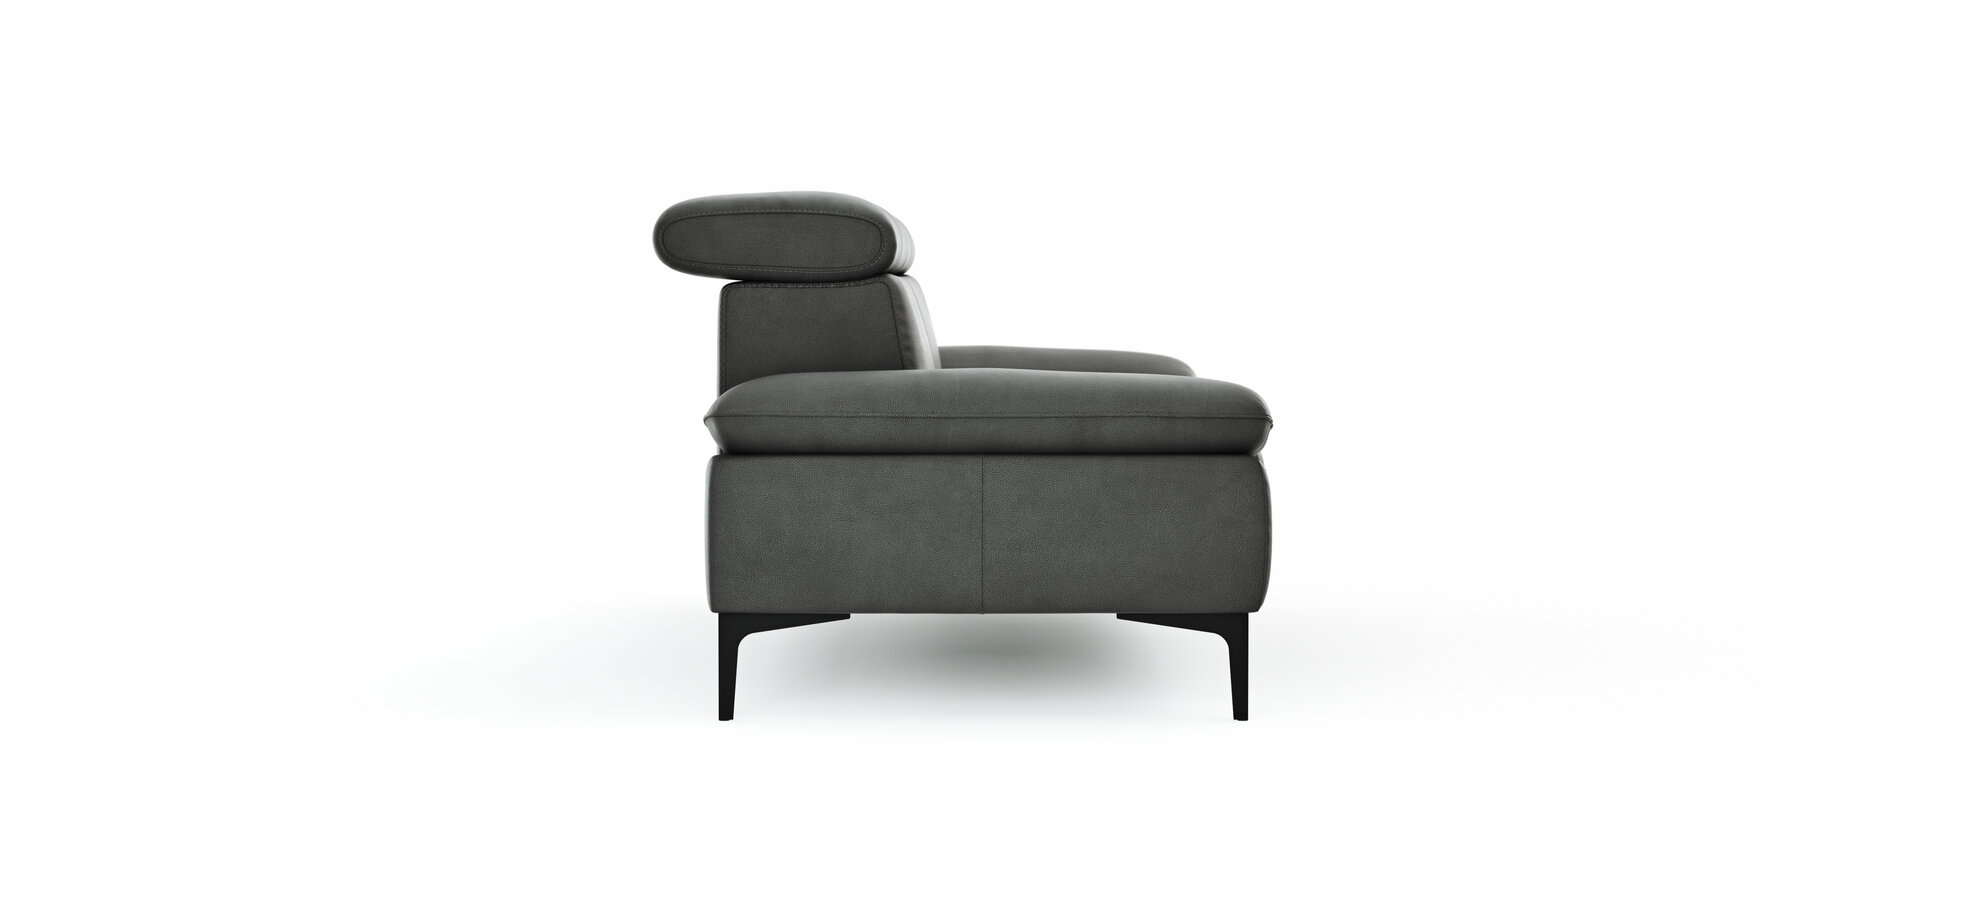 Sofa Felipa – 3-Sitzer inkl. Kopfteil verstellbar, Leder, Grau